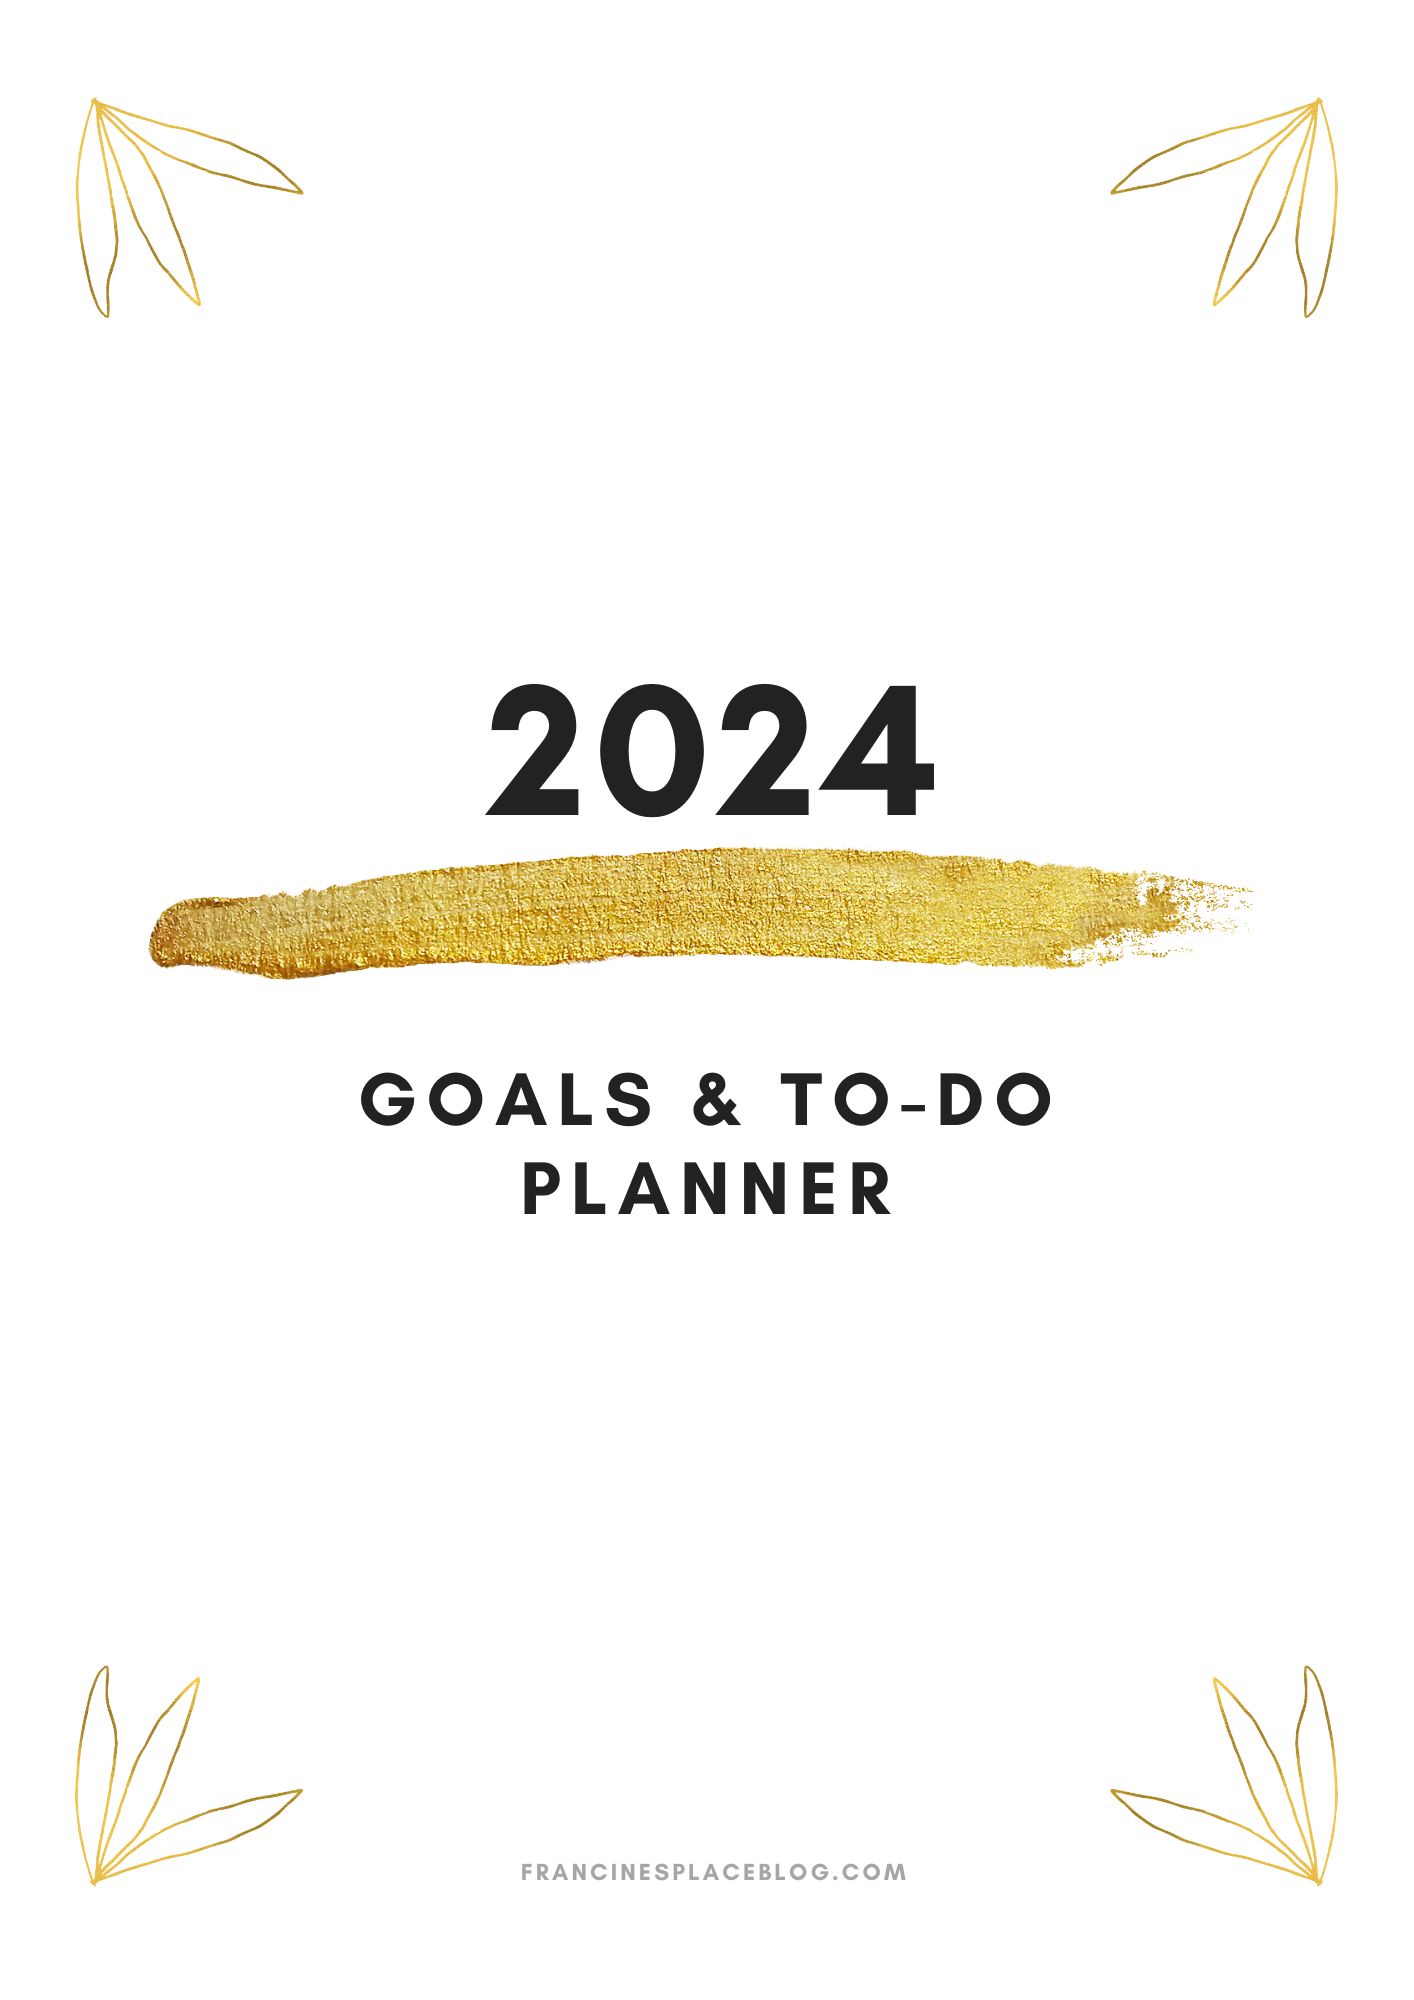 Scarica gratis l'agenda degli obiettivi 2024 mensile, settimanale e giornaliera in pdf - floral francinesplaceblog pinterest